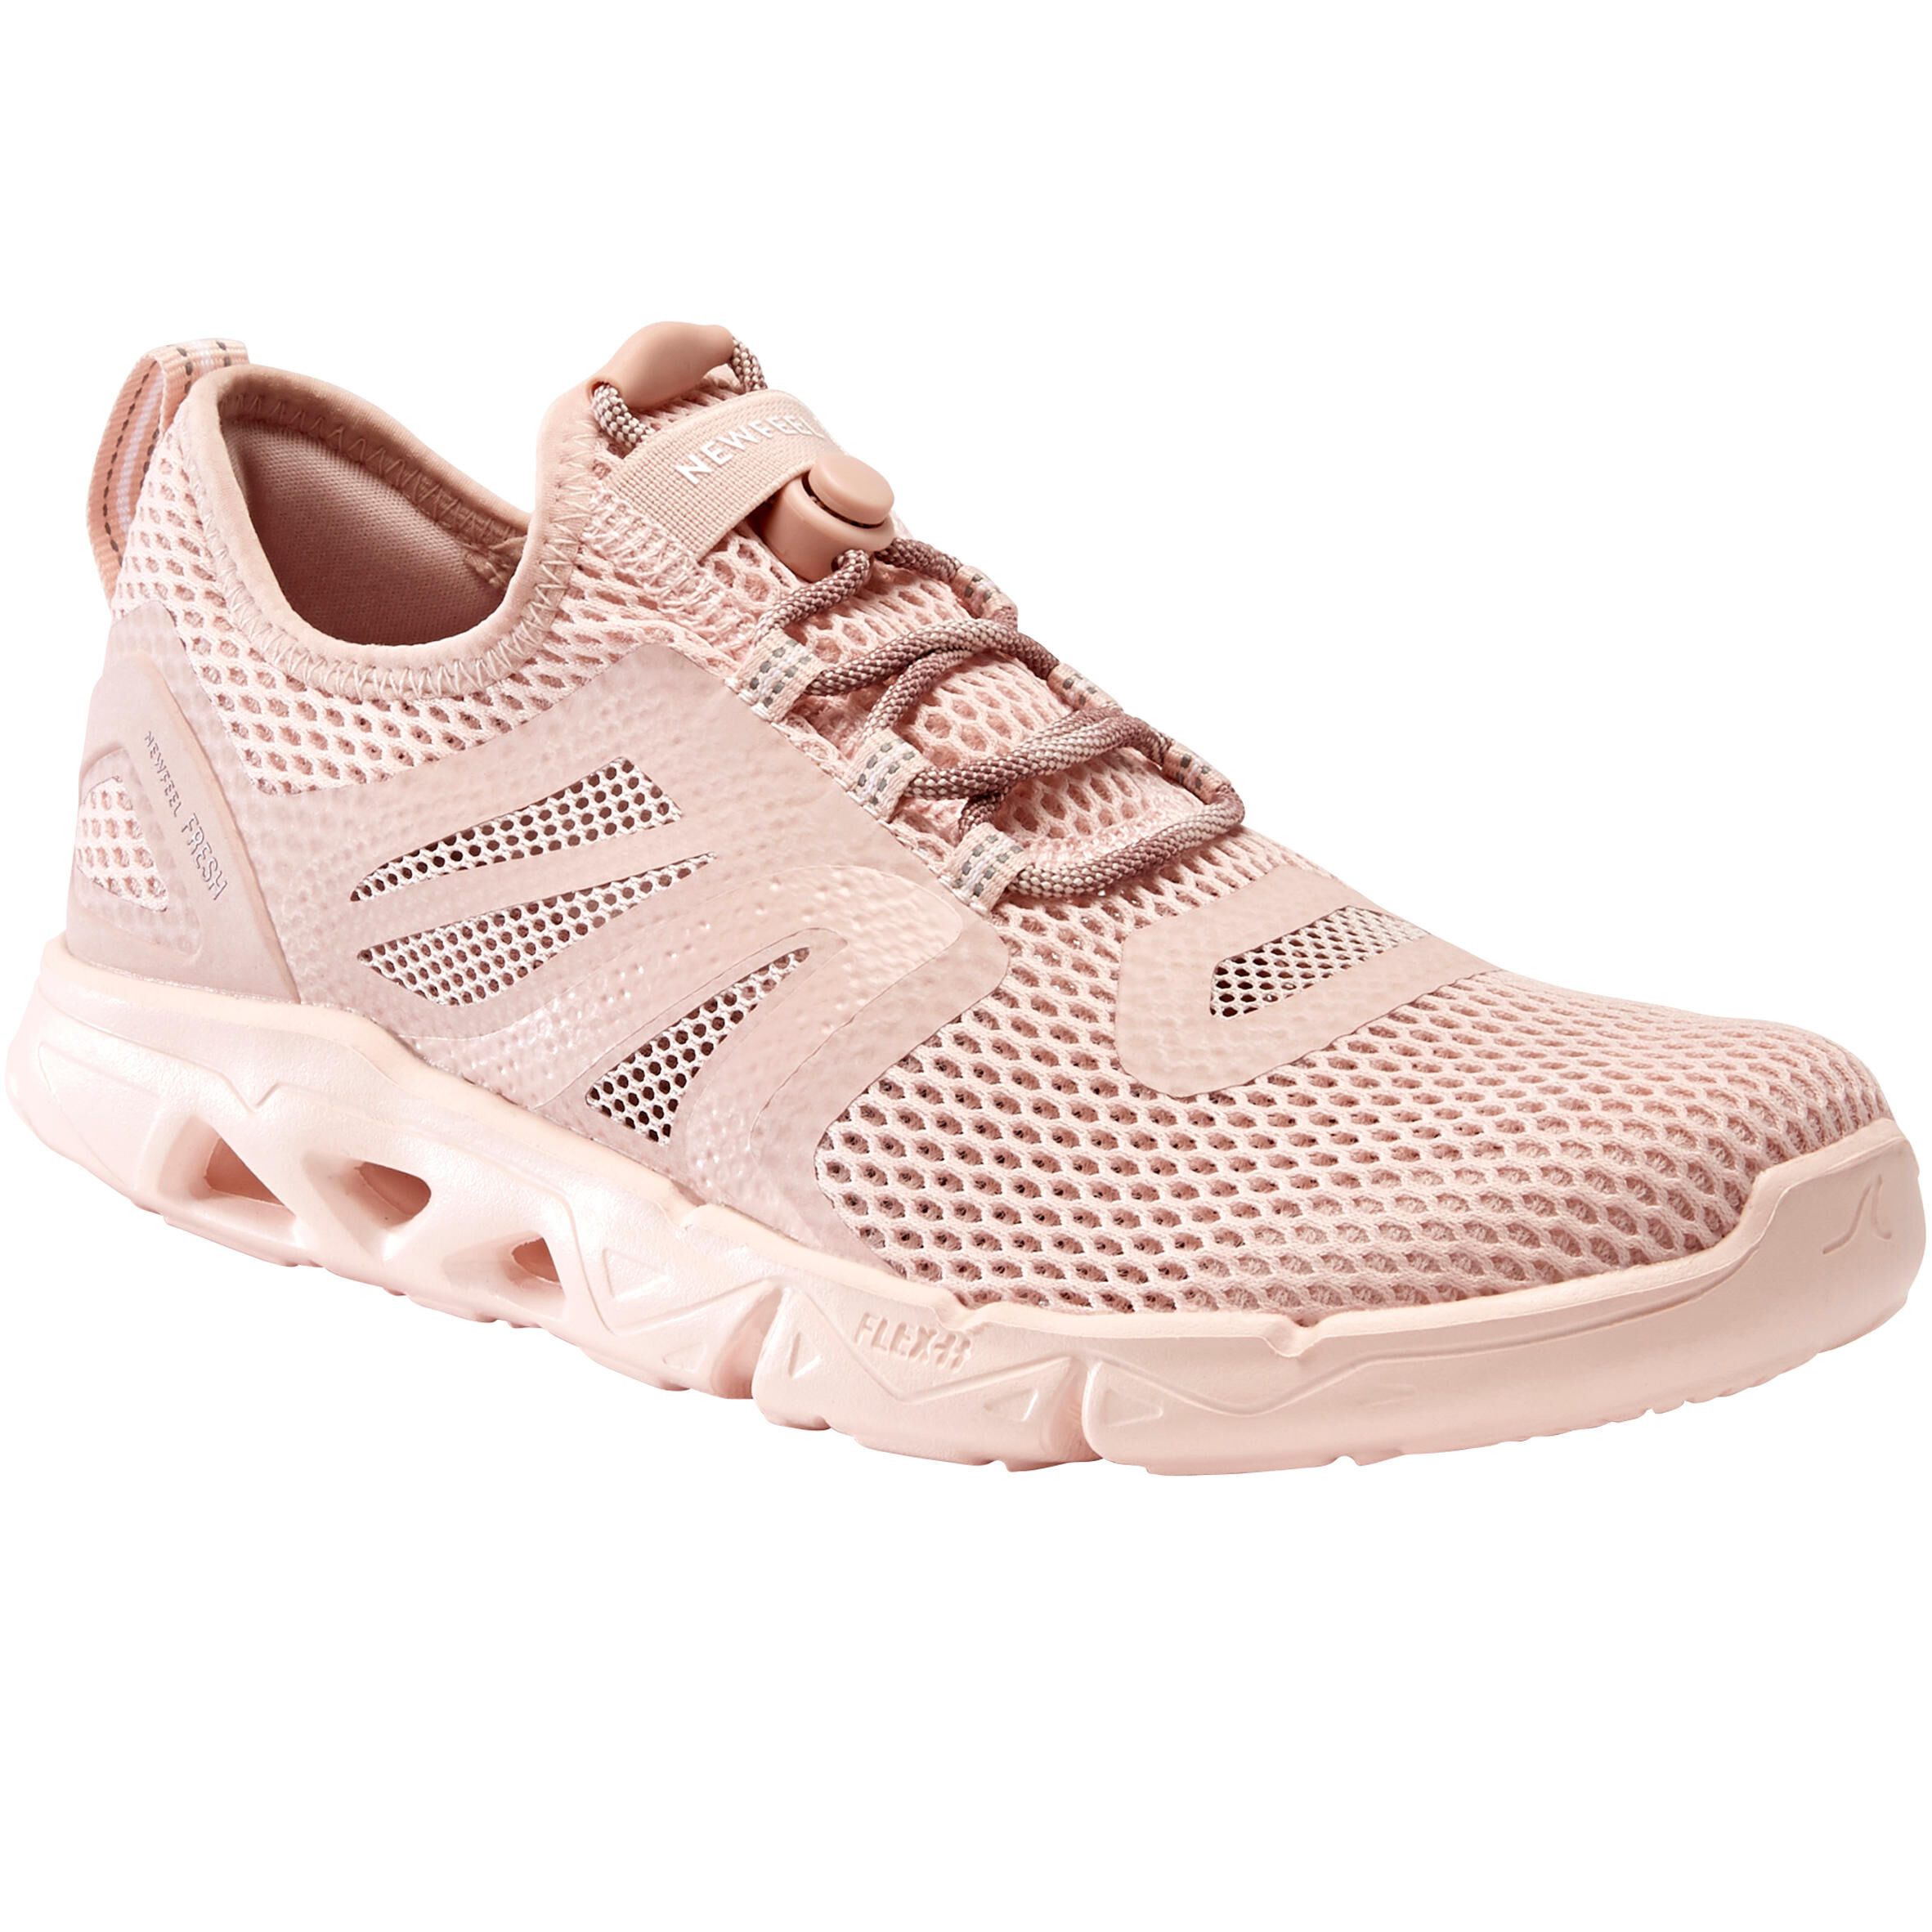 NEWFEEL Women's Fitness Walking Shoes PW 500 - pink